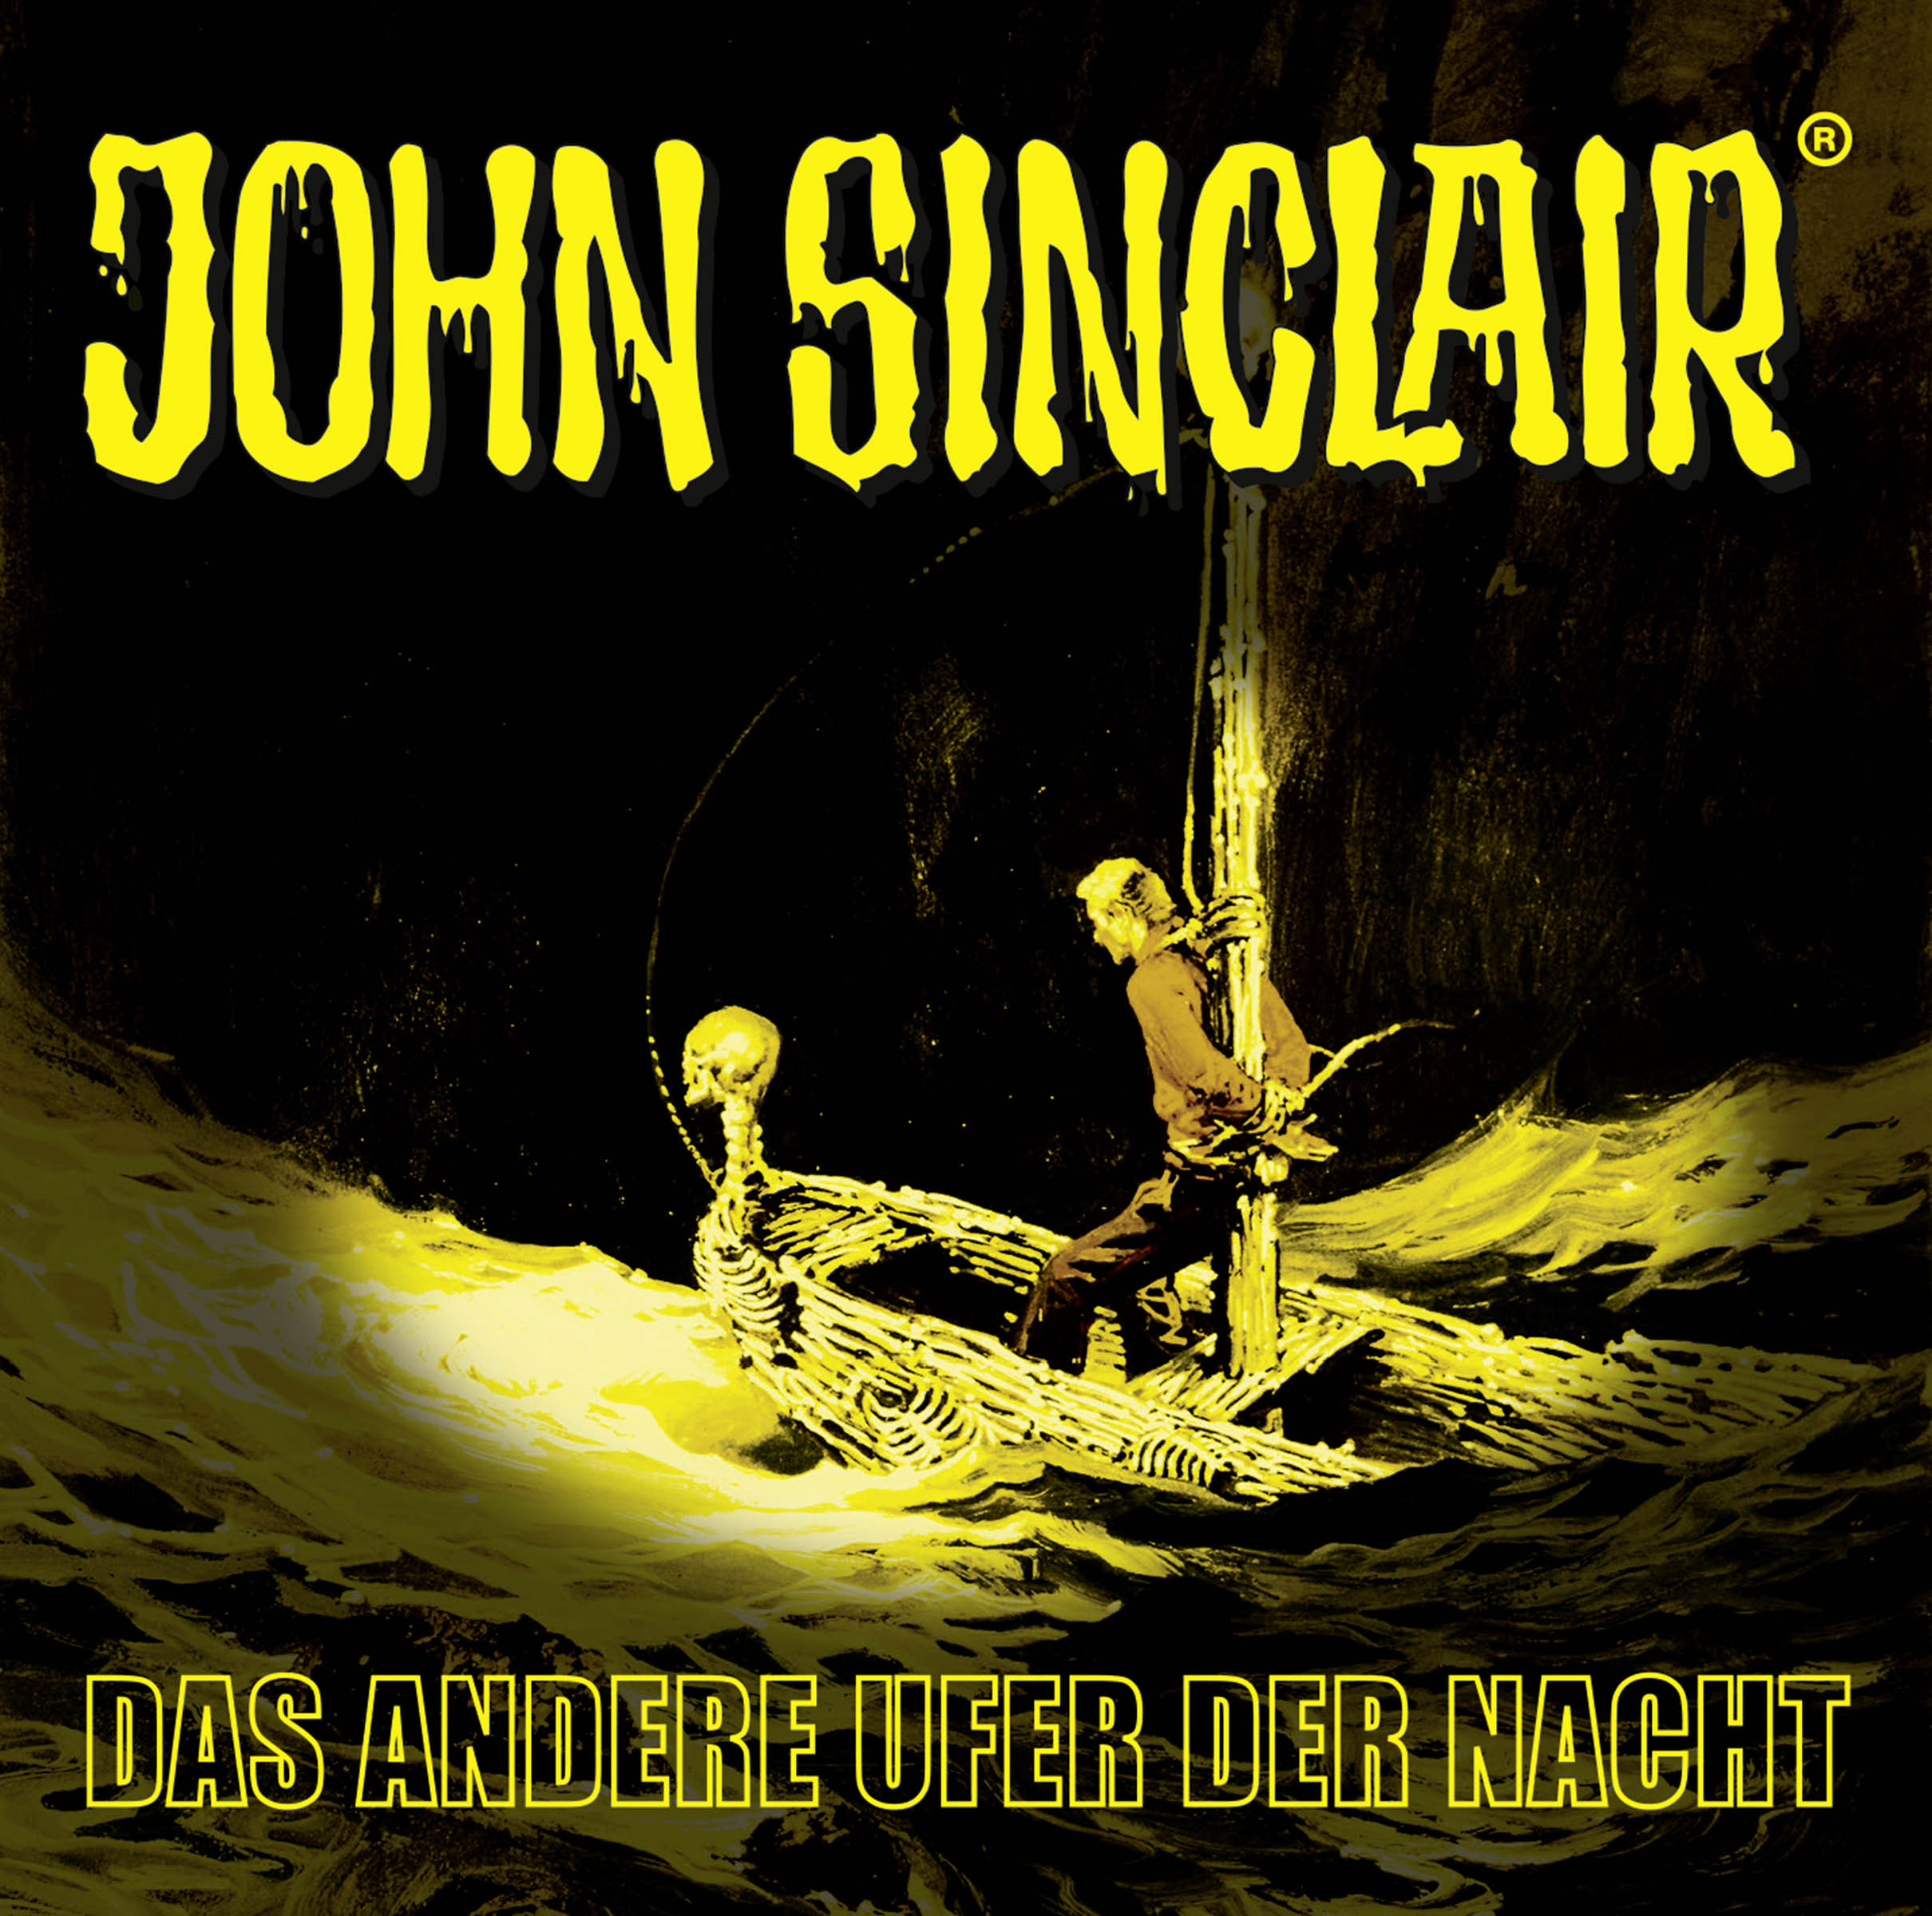 John Sinclair - Das andere Ufer der Nacht